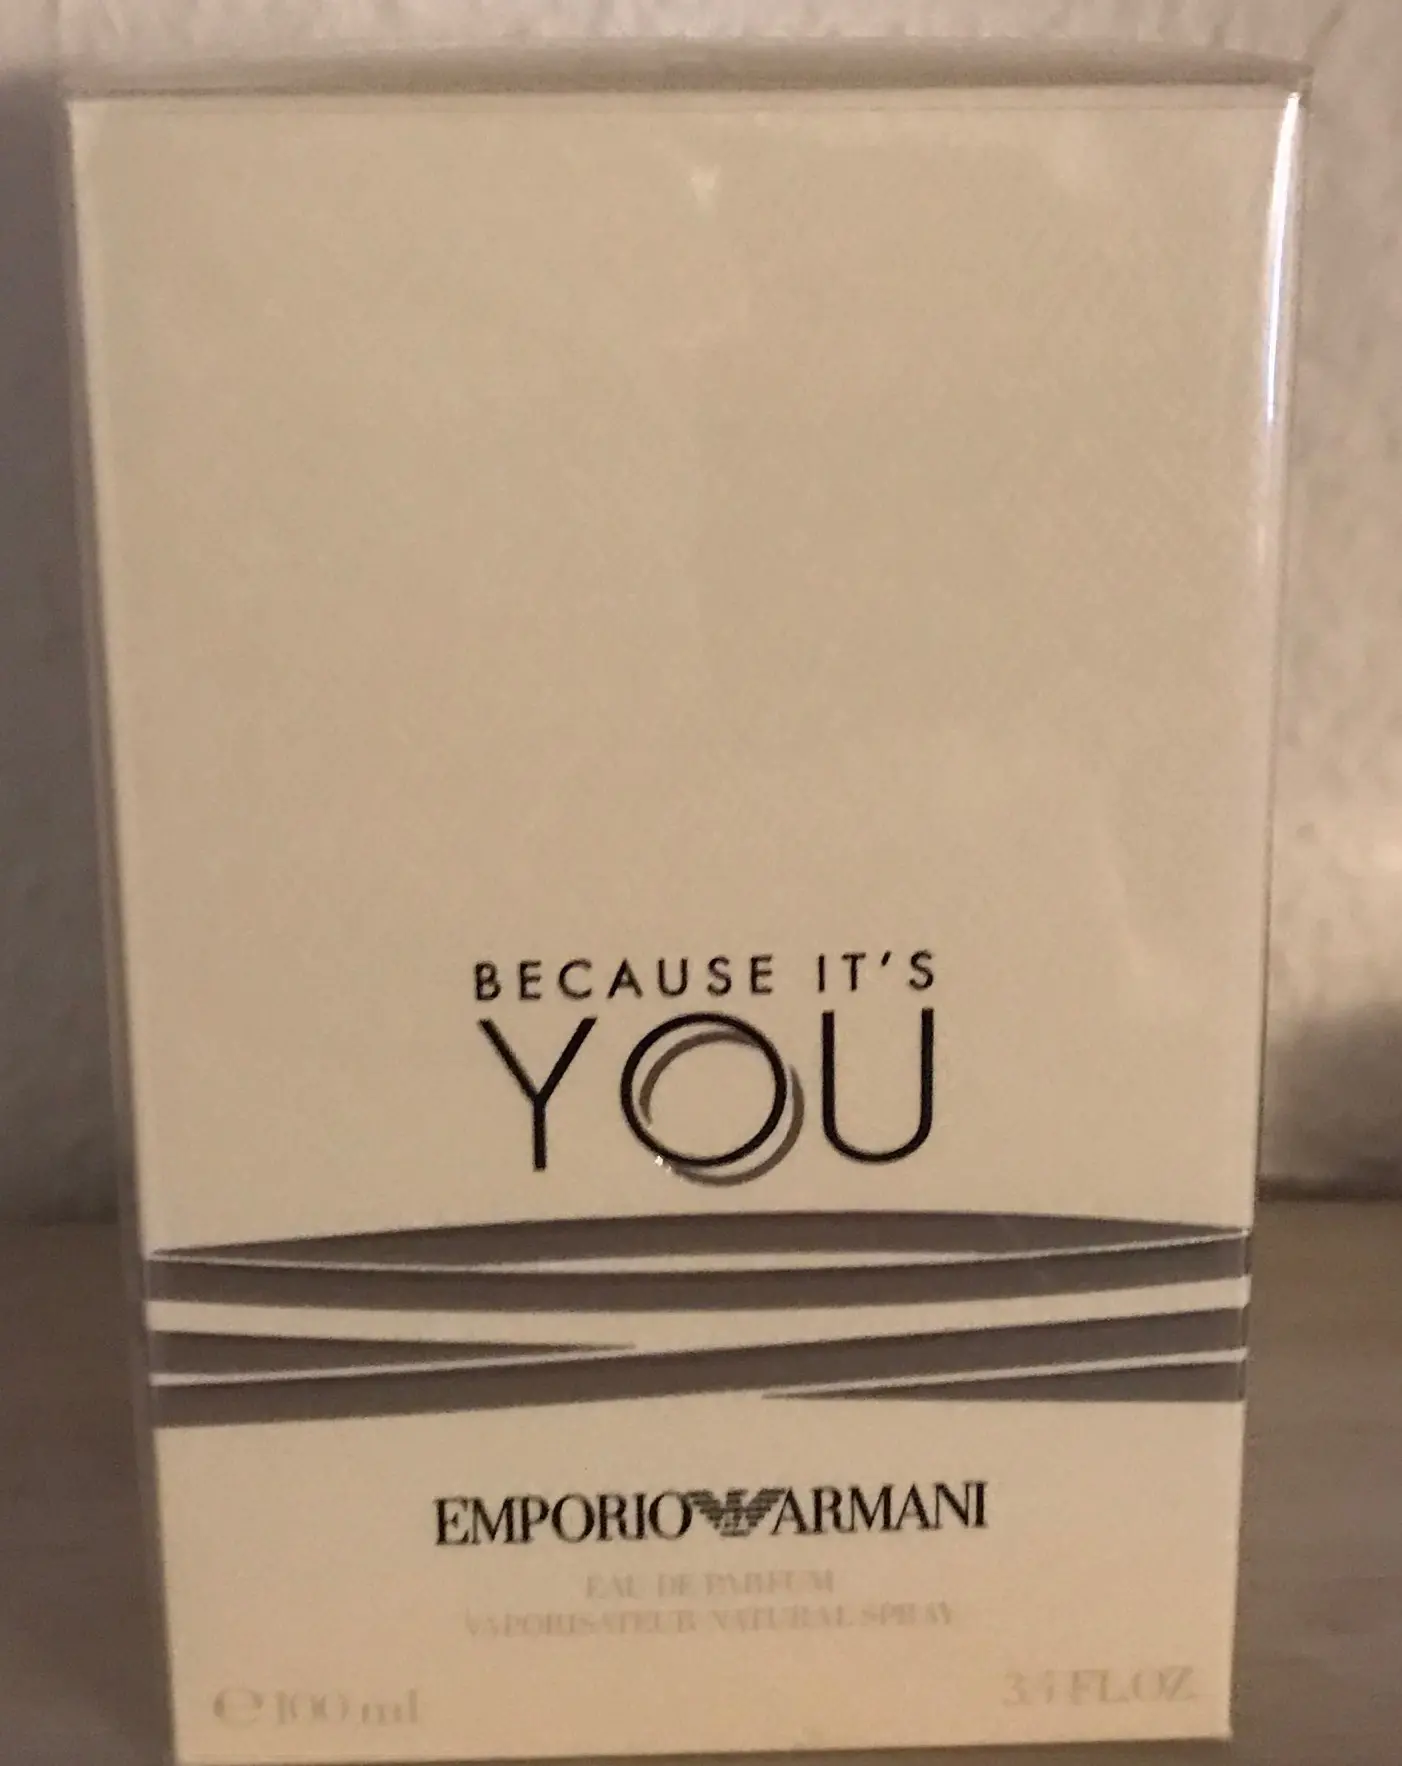 Emporio Armani eau de parfum